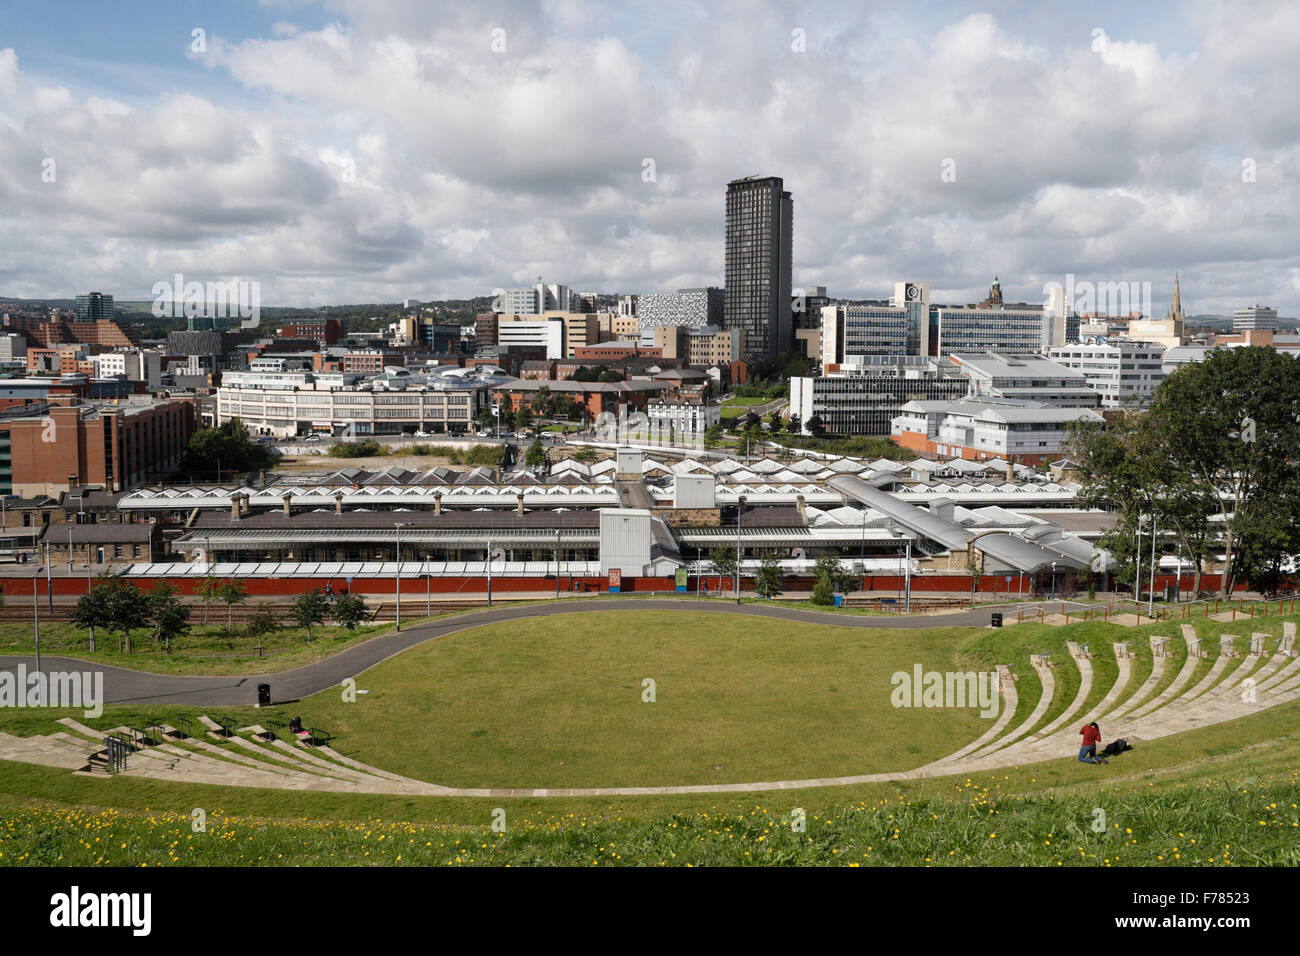 Centro città di Sheffield Inghilterra, skyline del Regno Unito, stazione ferroviaria, anfiteatro pubblico inglese, vista panoramica Foto Stock